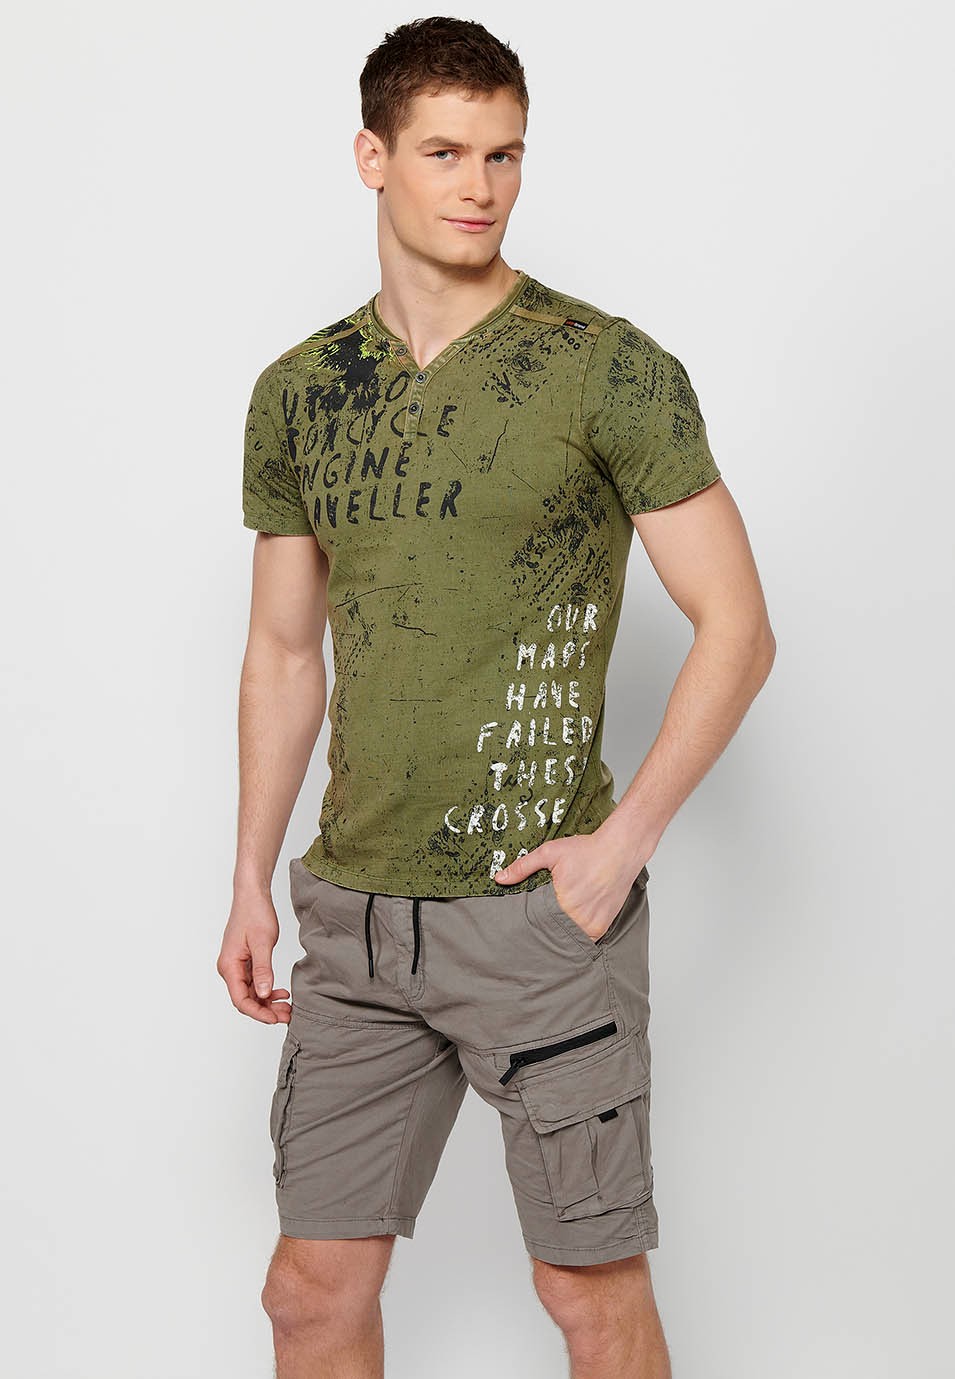 Camiseta de manga corta, estampada, cuello abierto con botones, color kaki para hombre